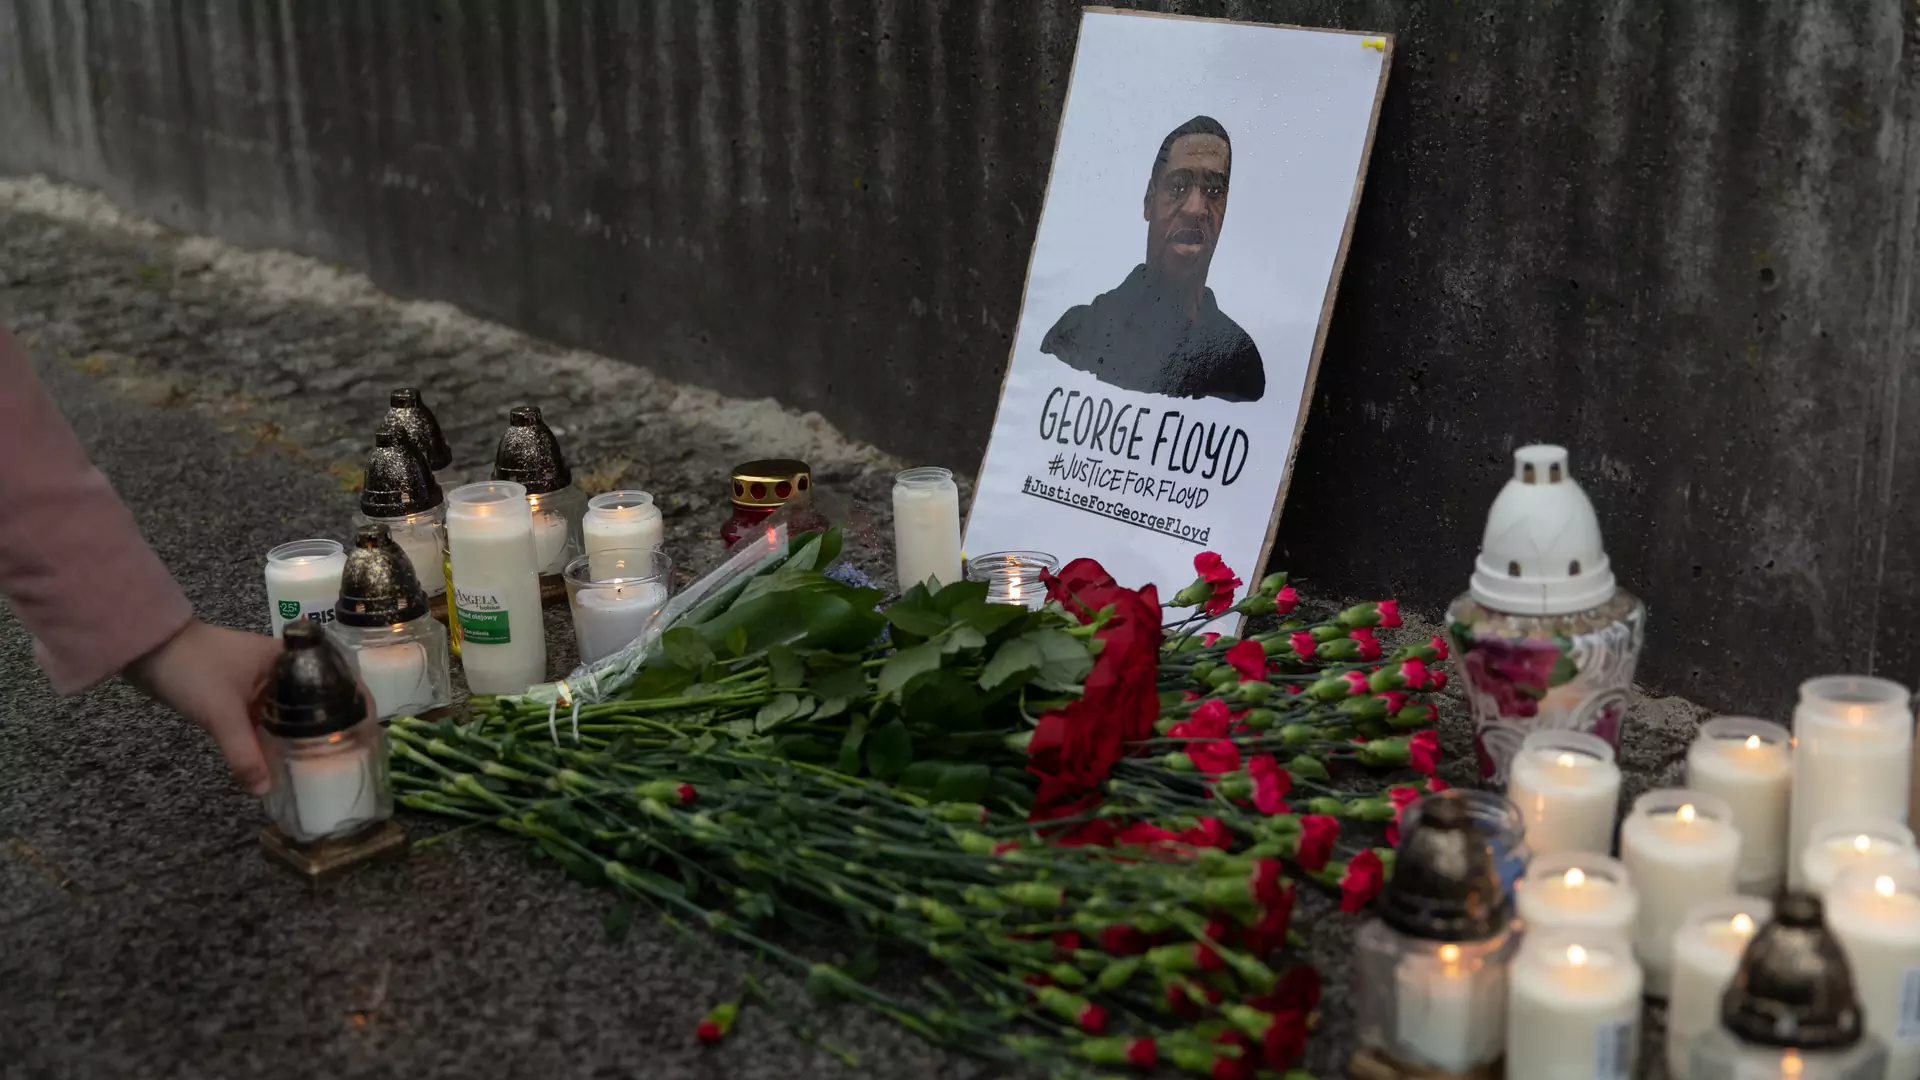 Ambasada USA w Warszawie zmienia zdanie i przeprasza. "Kwiaty i świece ku pamięci George'a Floyda mogą być składane"